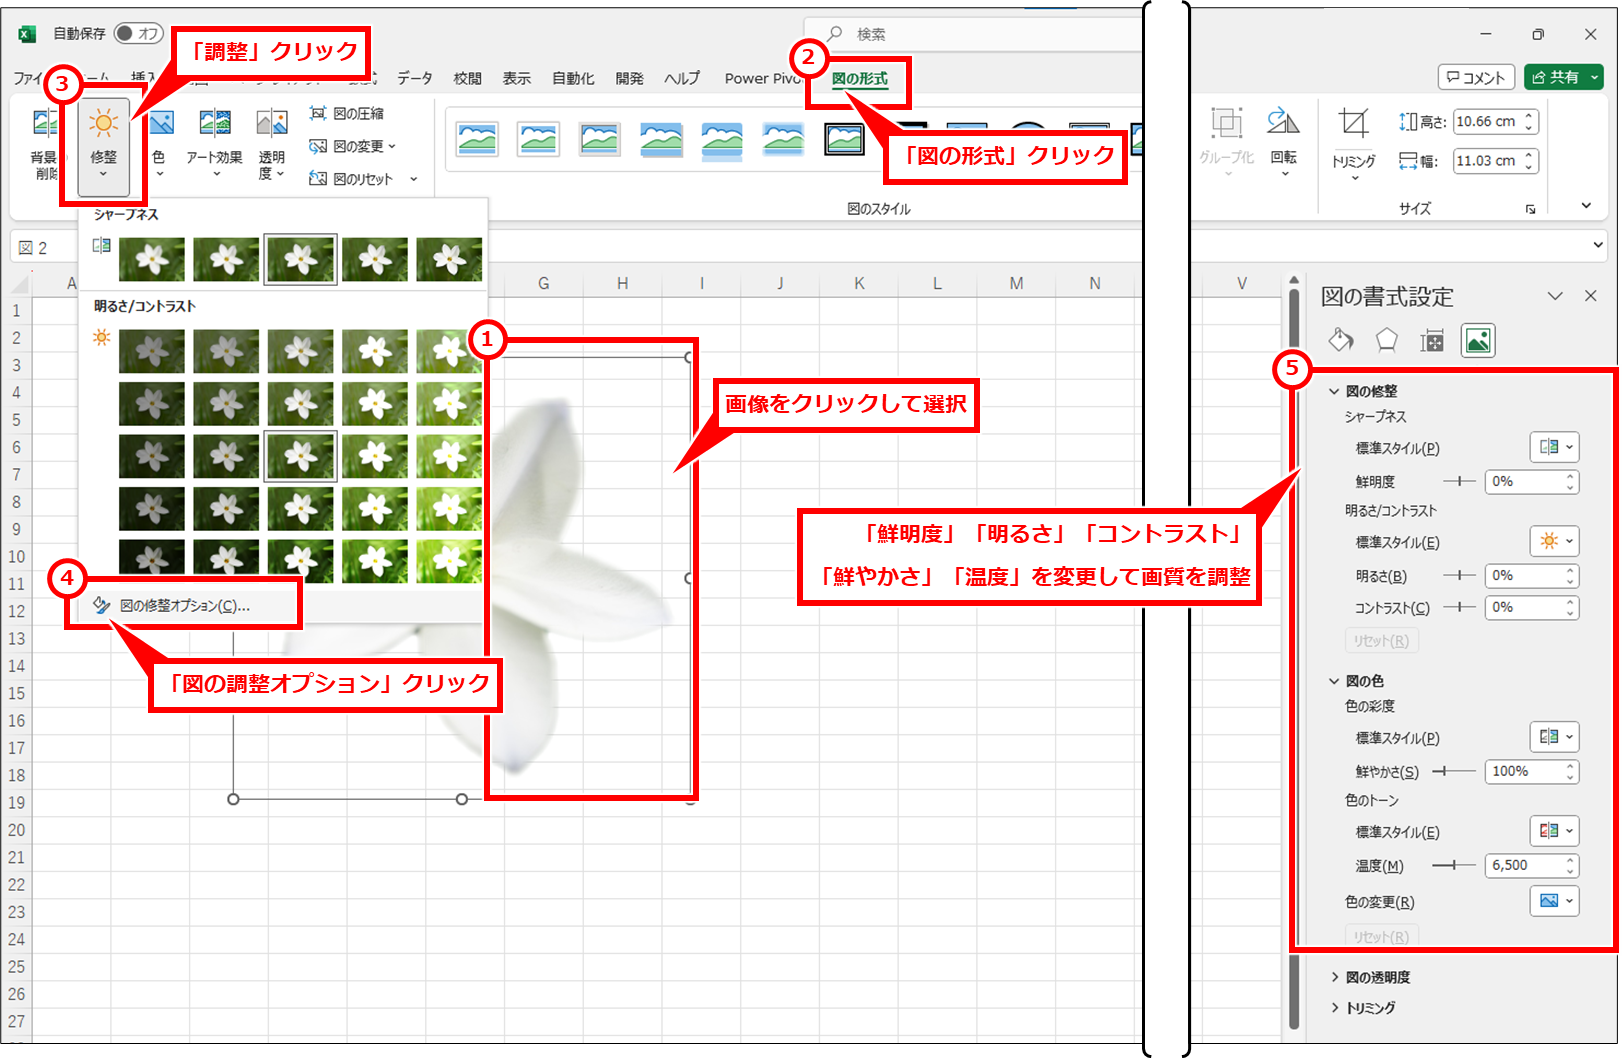 Excel 写真・画像の切り抜き・色合いを調整して画像ファイルとして保存する方法 画像をクリックして選択し、「図の形式」 → 「調整」 → 「図の調整オプション」を順にクリックし、右側に表示された「図の書式設定」セクションで、画像の調整を行なう。